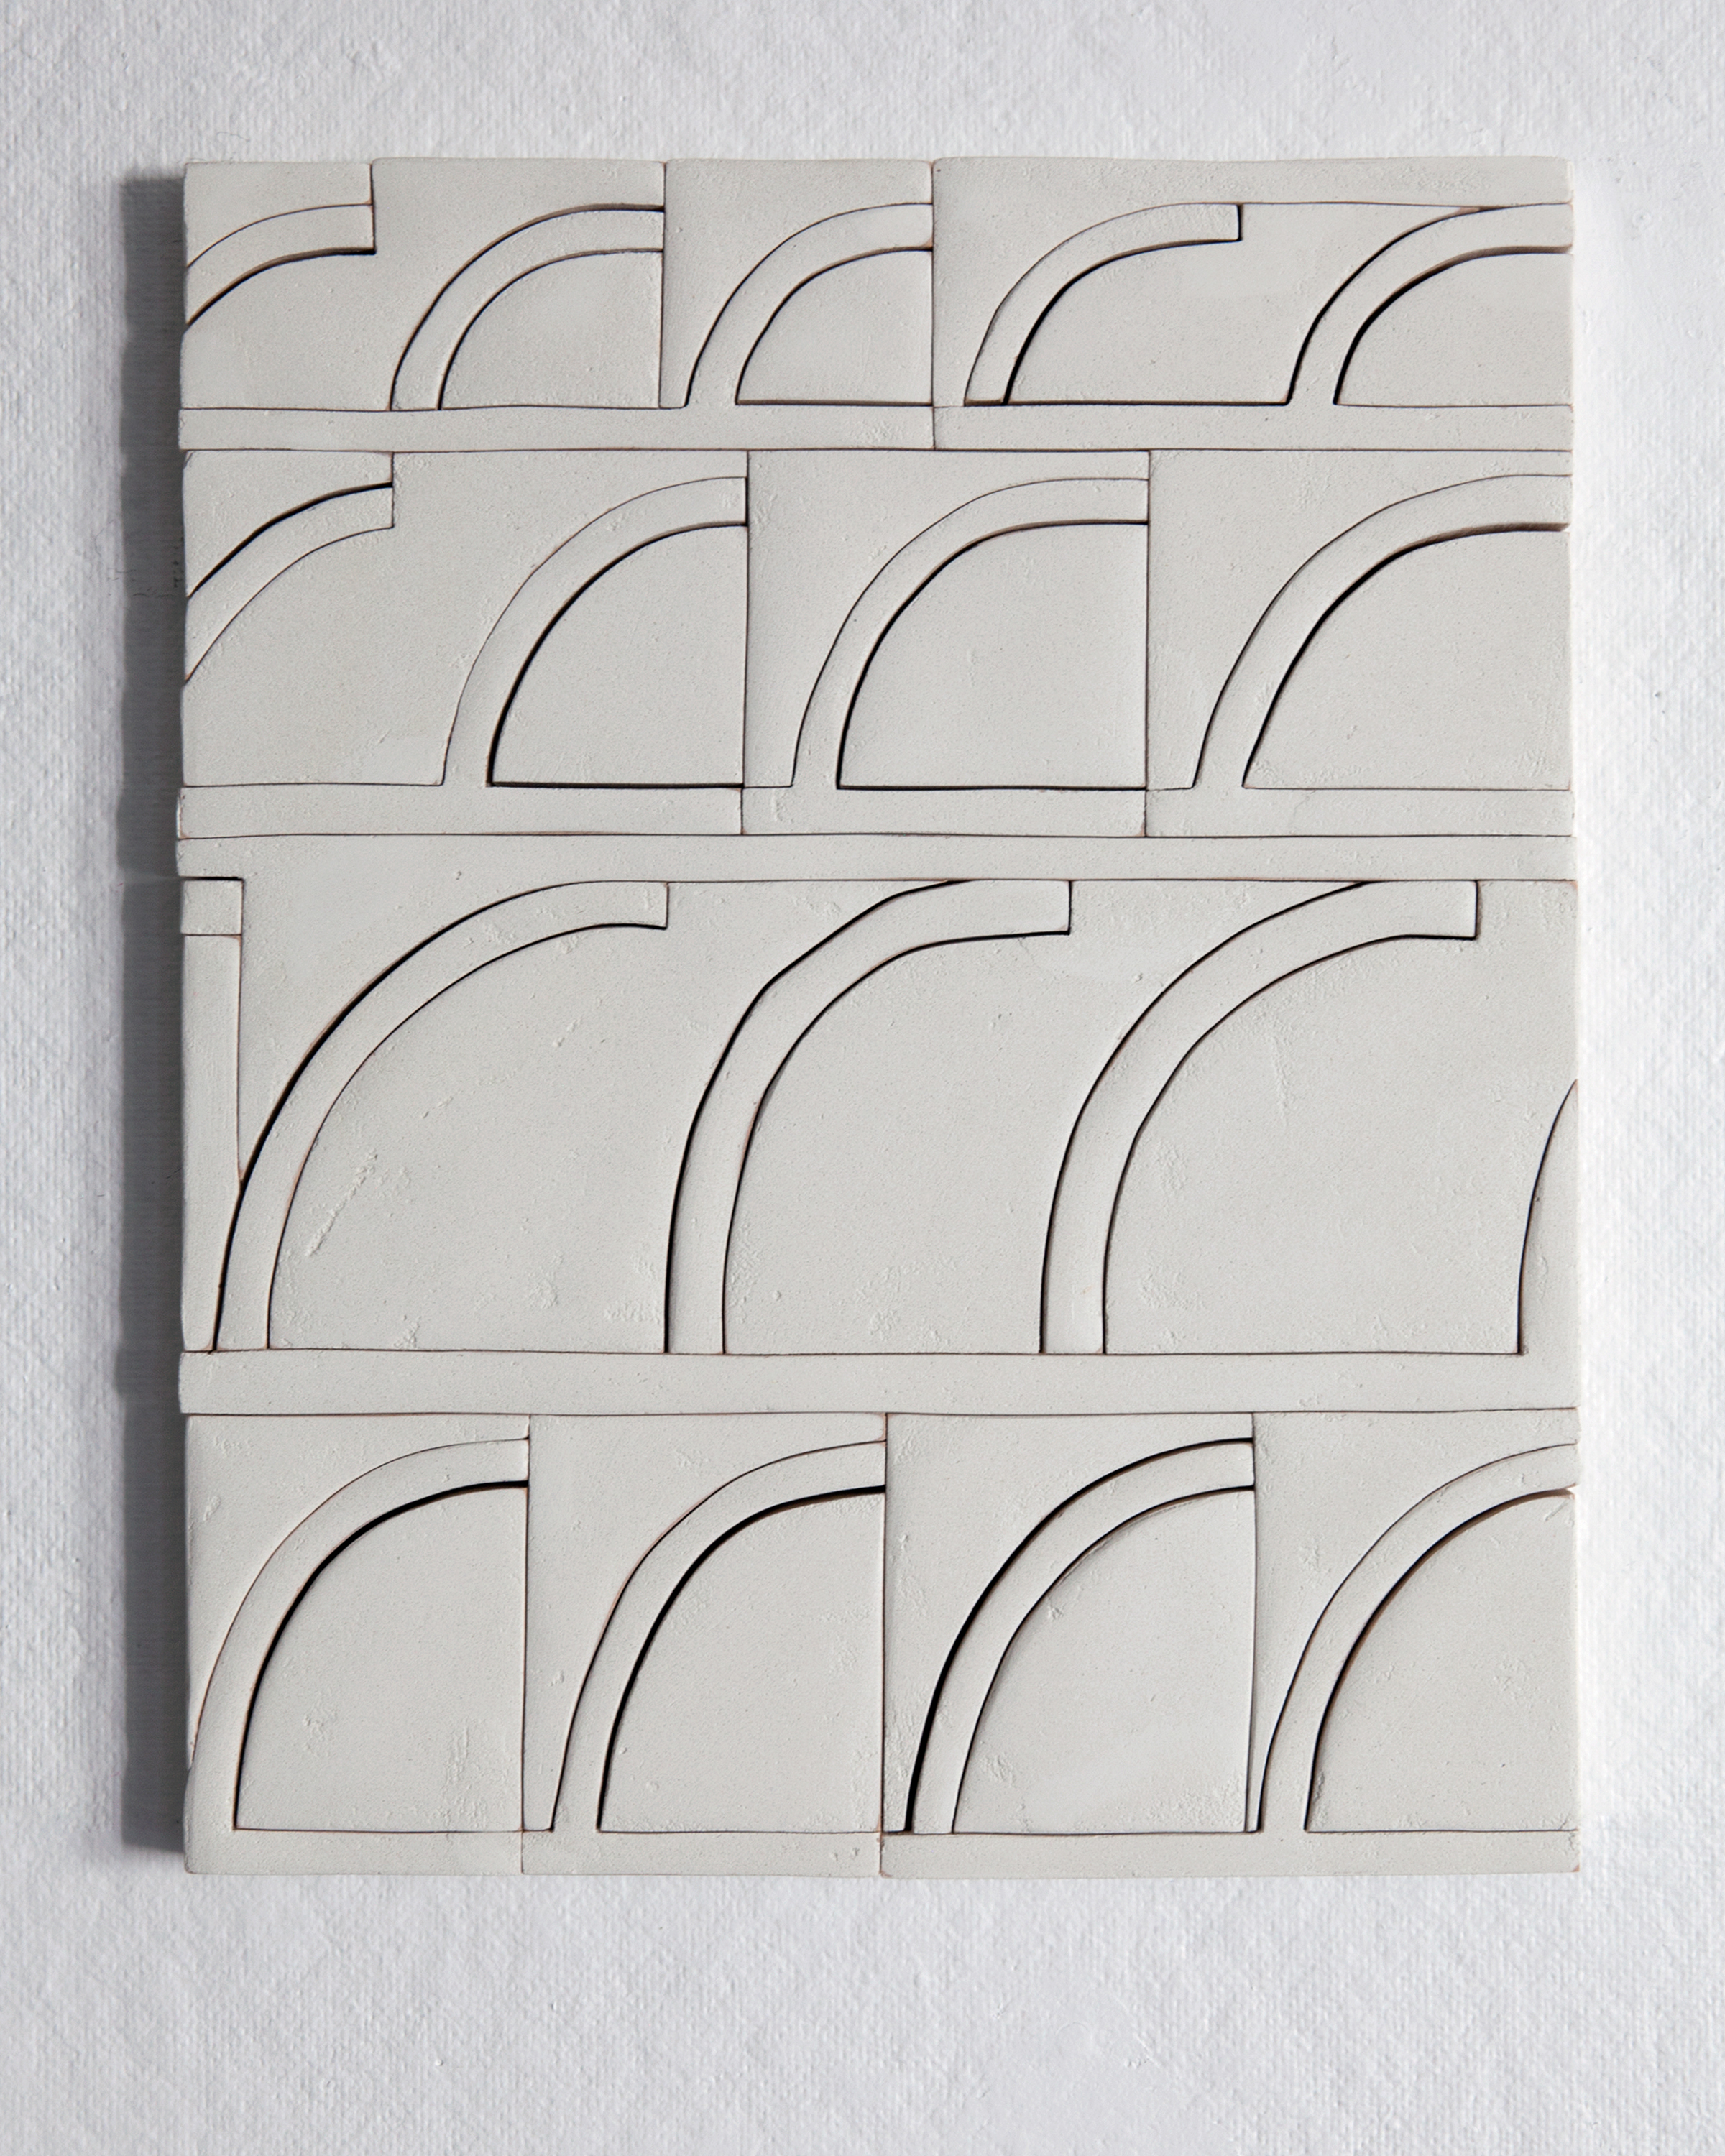  Elizabeth Atterbury,  4 Sets , 2017, Mortar, Plywood and Glue, 15 x 12 x 1 in  